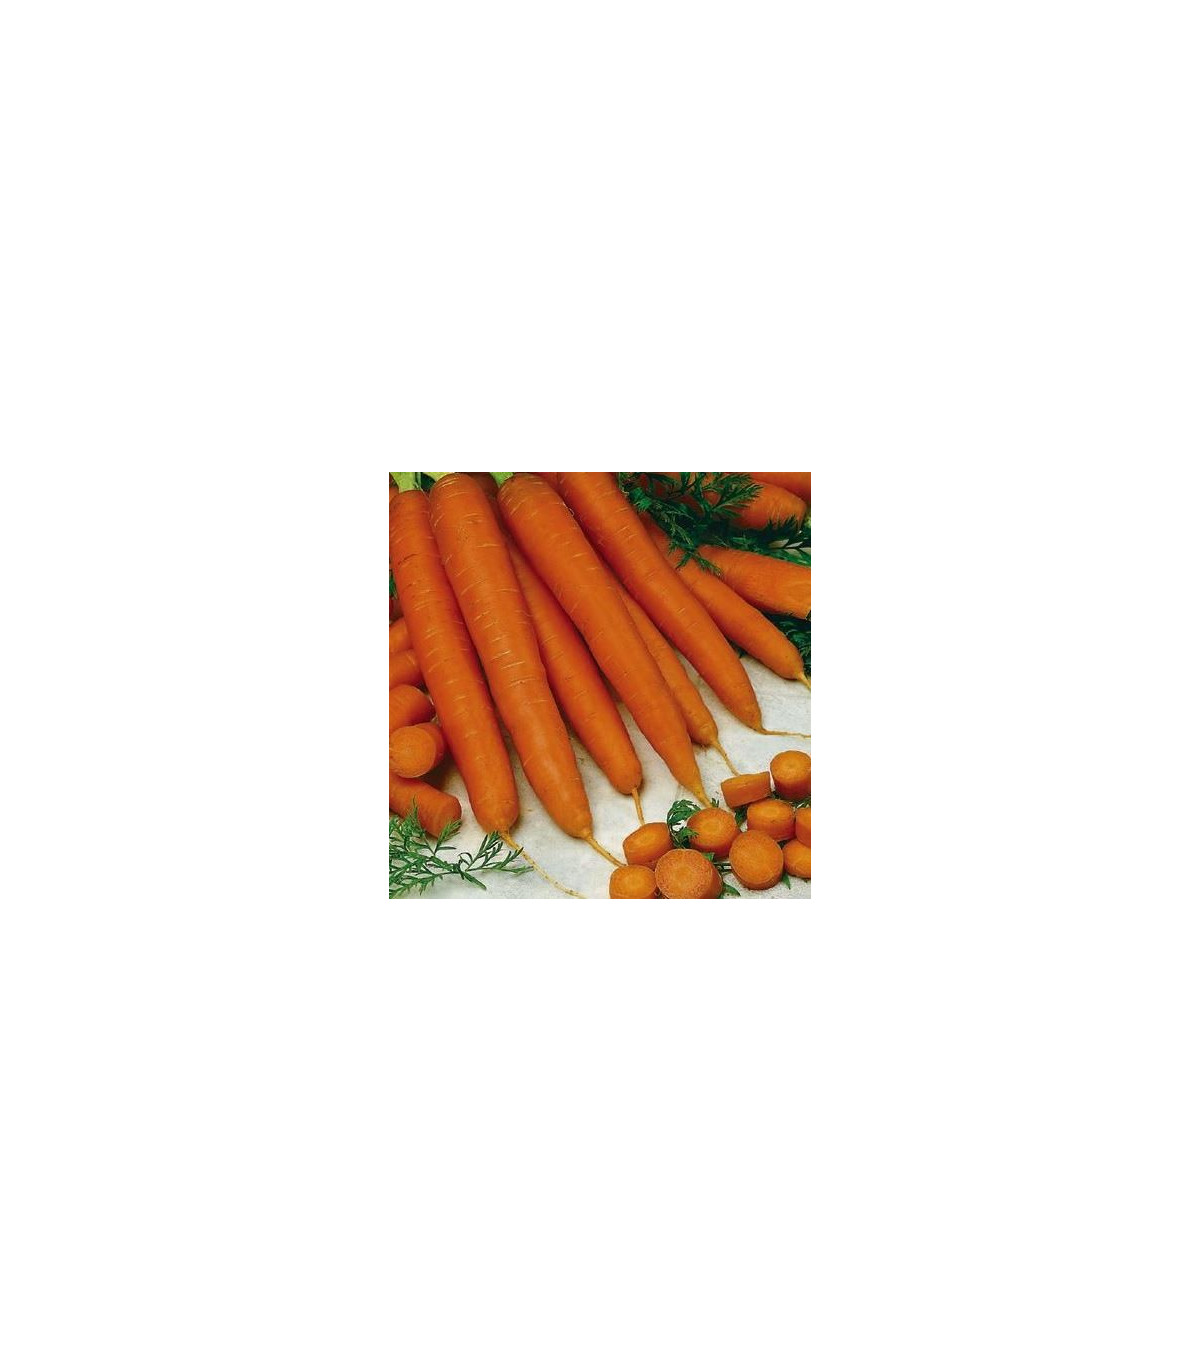 Mrkva skorá Gonsenheimer Treib – Daucus carota – osivo mrkvy